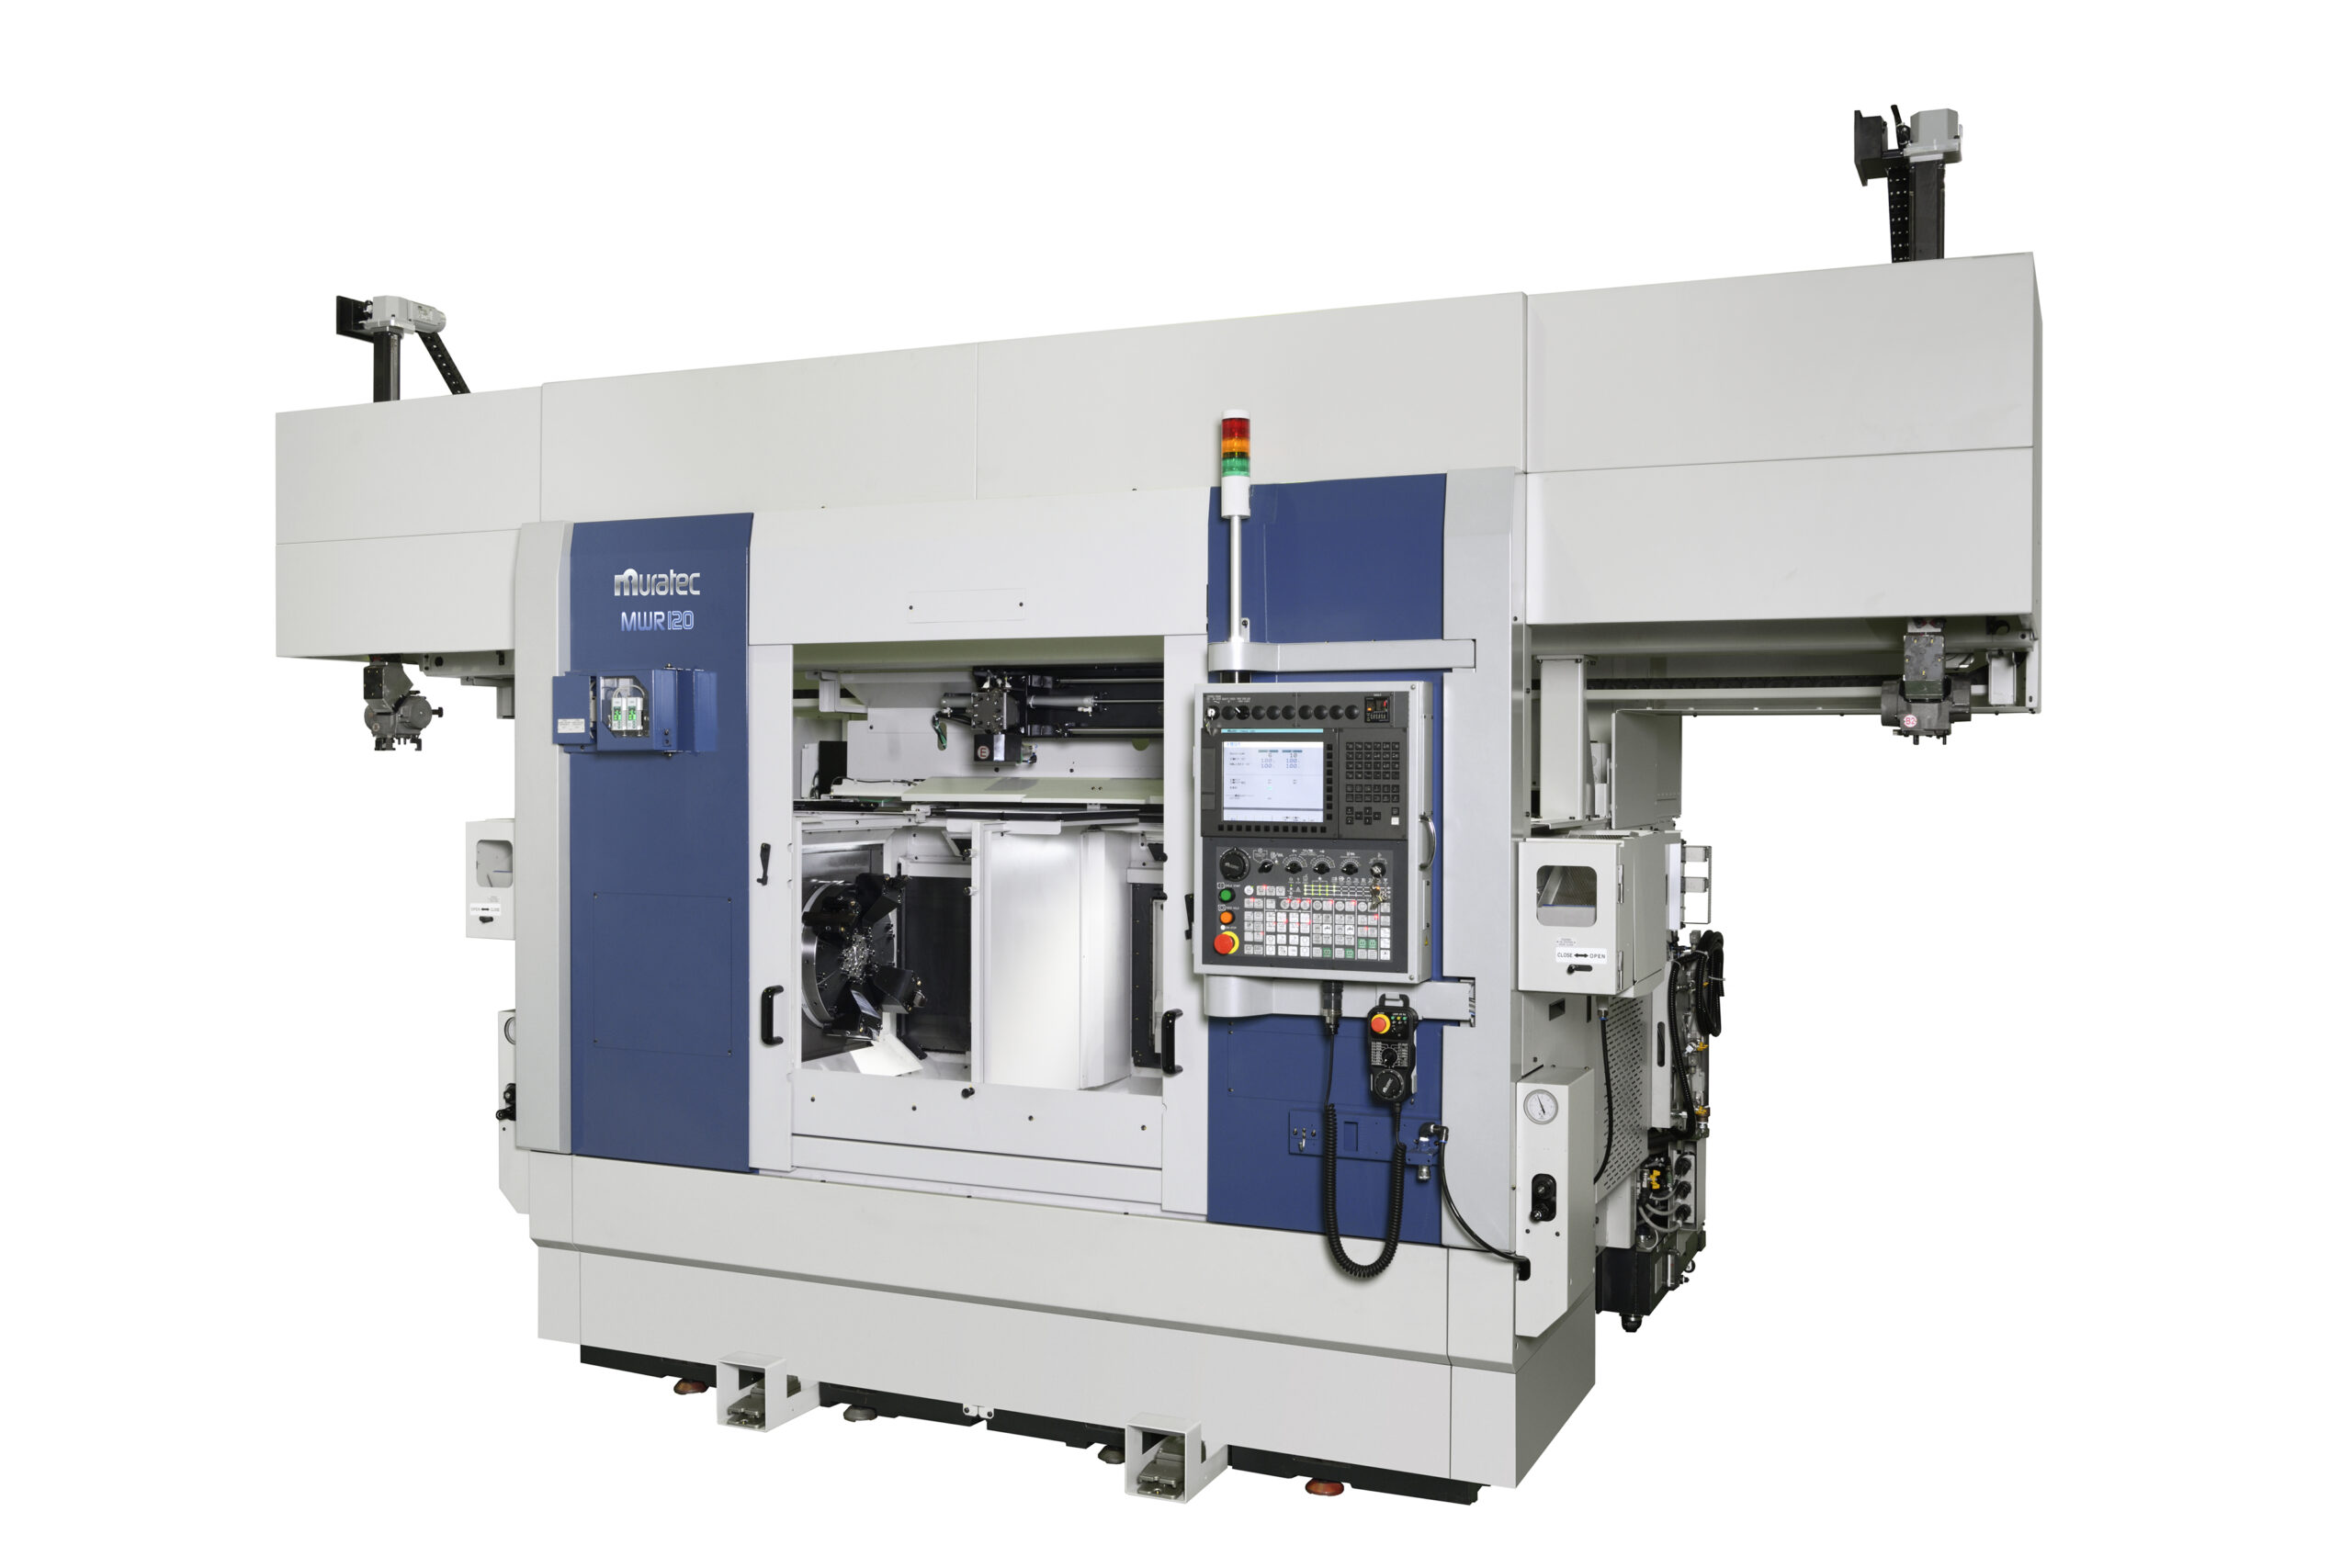 村田機械、Y軸機能搭載の正面型CNCターニングセンタ 回転工具の複合加工で複雑形状のワークに対応